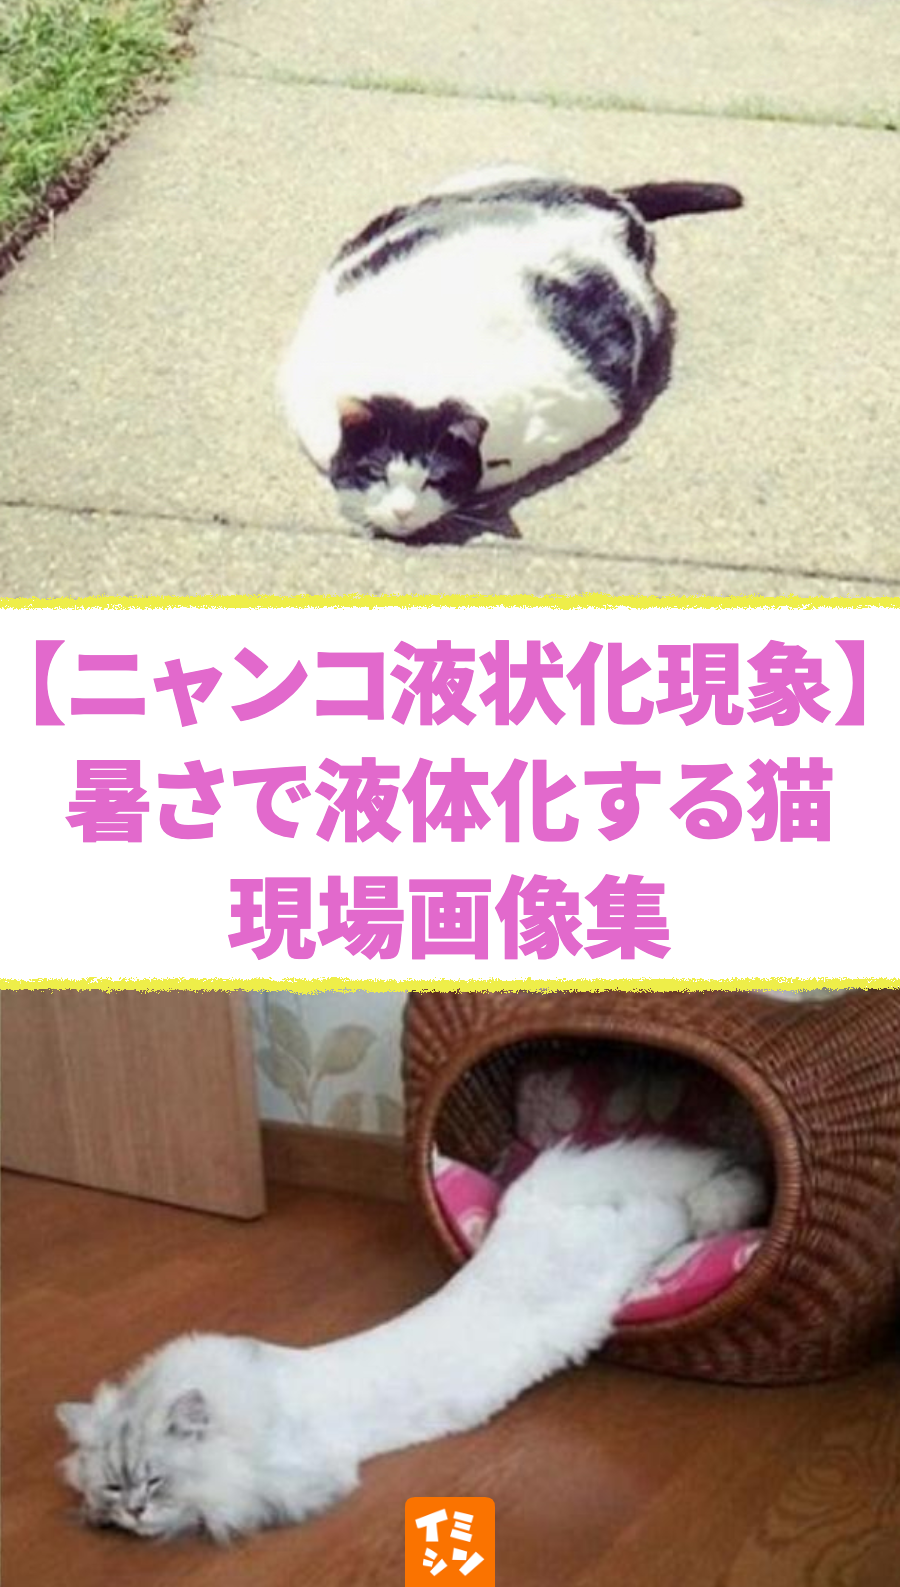 【ニャンコ液状化現象】暑さで液体化する猫 証拠写真16画像